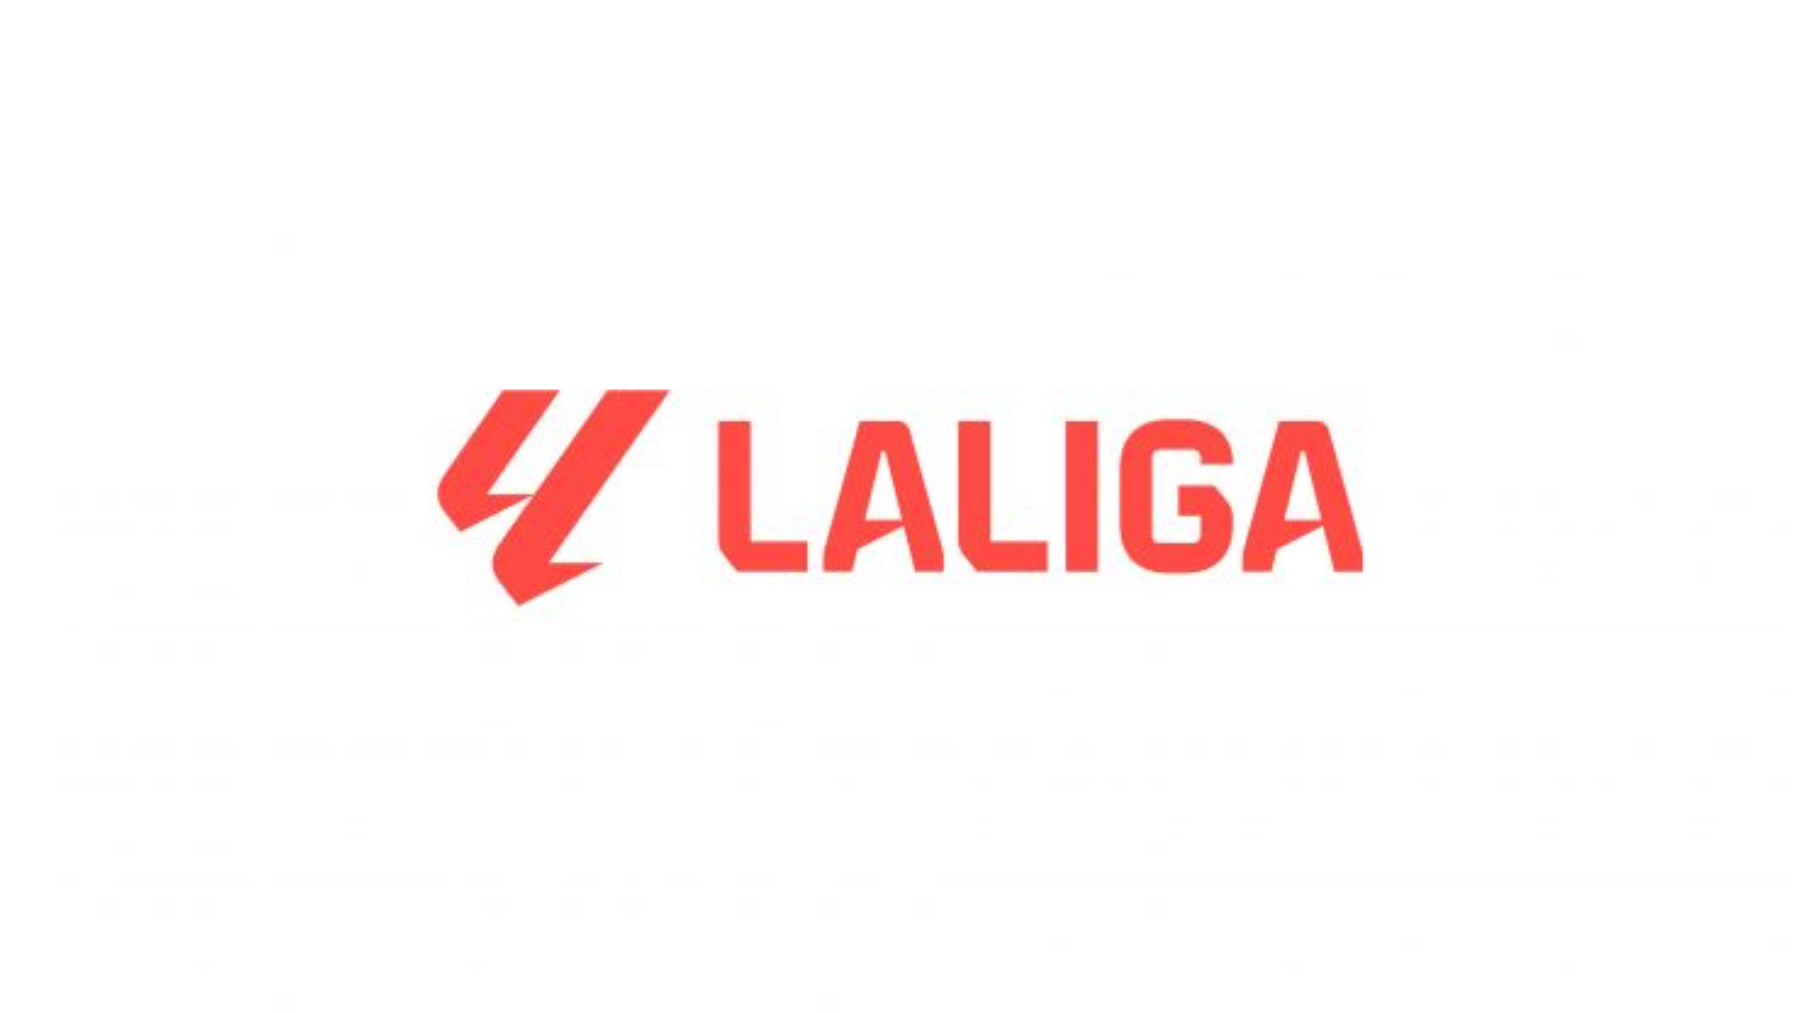 El nuevo logo que presenta La Liga.